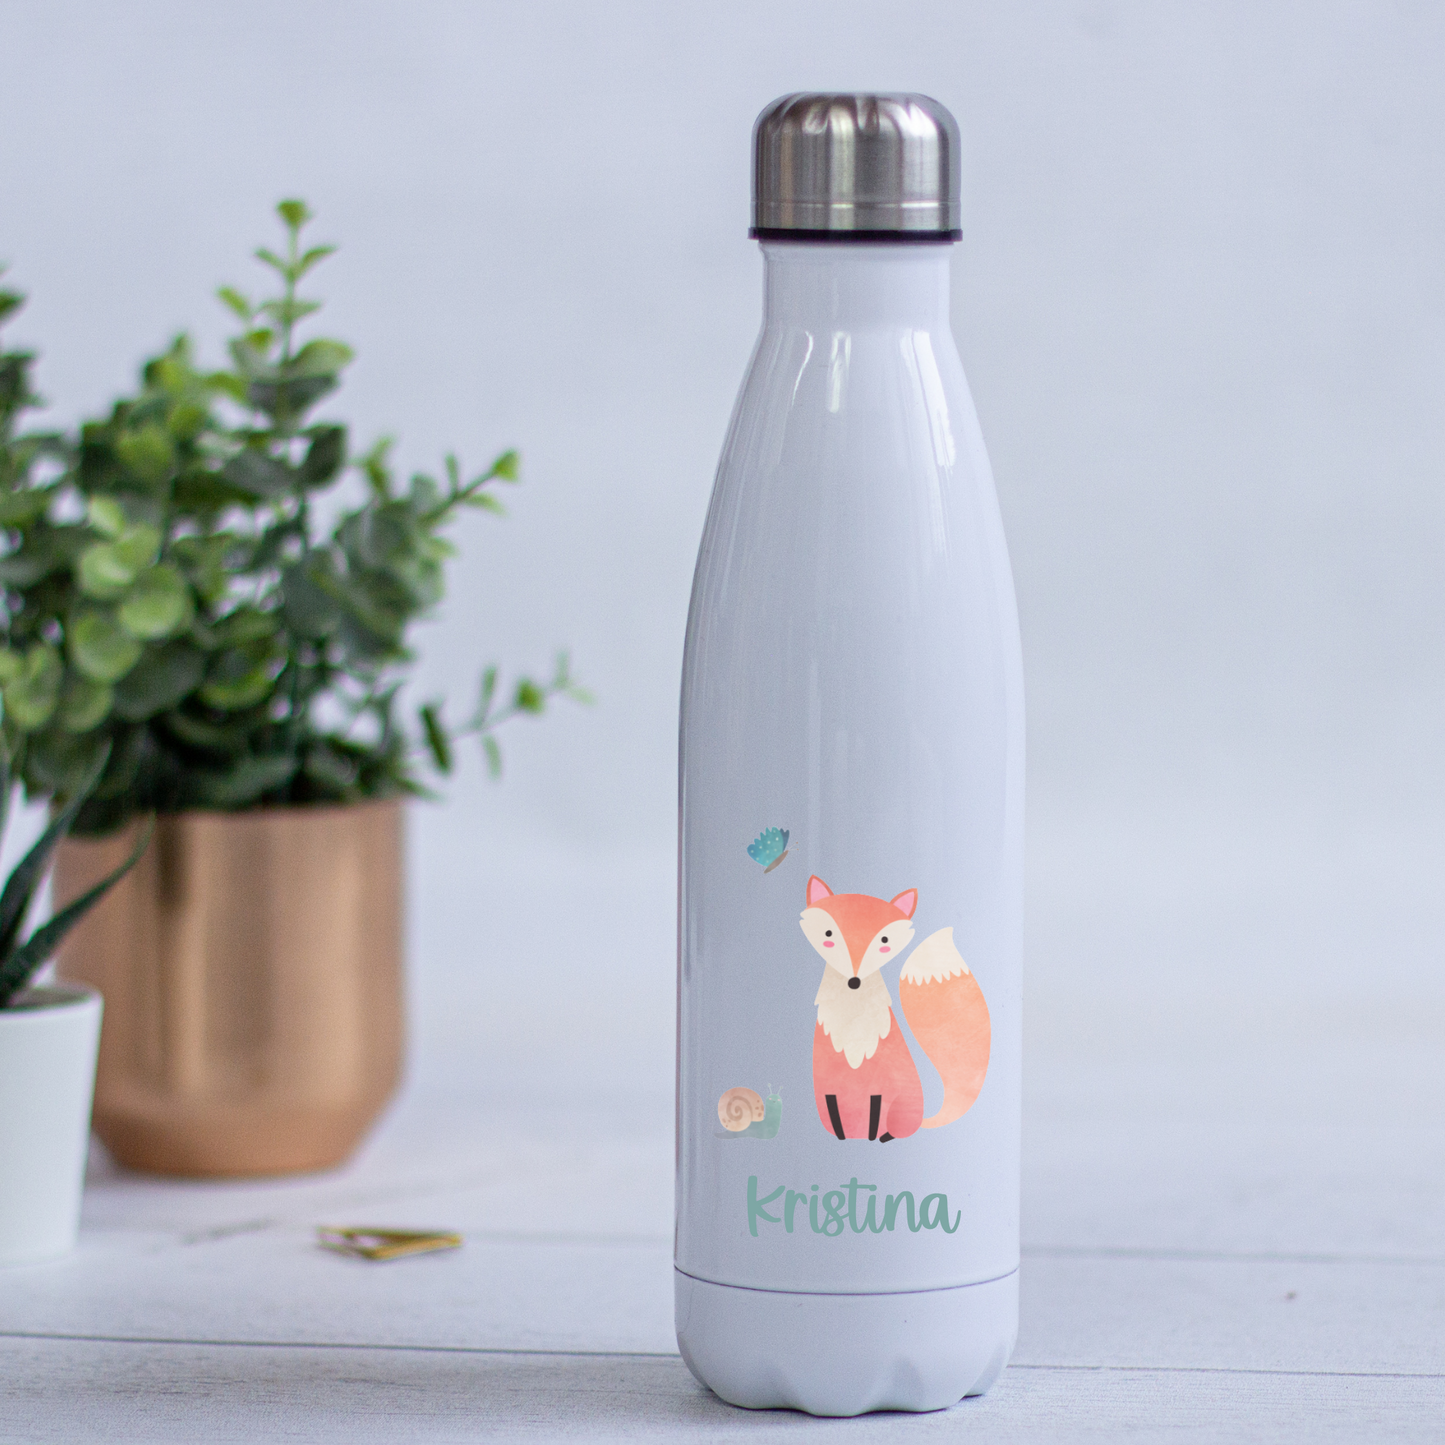 Thermoskanne Trinkflasche Edelstahl personalisiert mit Namen und Waldtiere - toll für Schule, Kindergarten und Freizeit